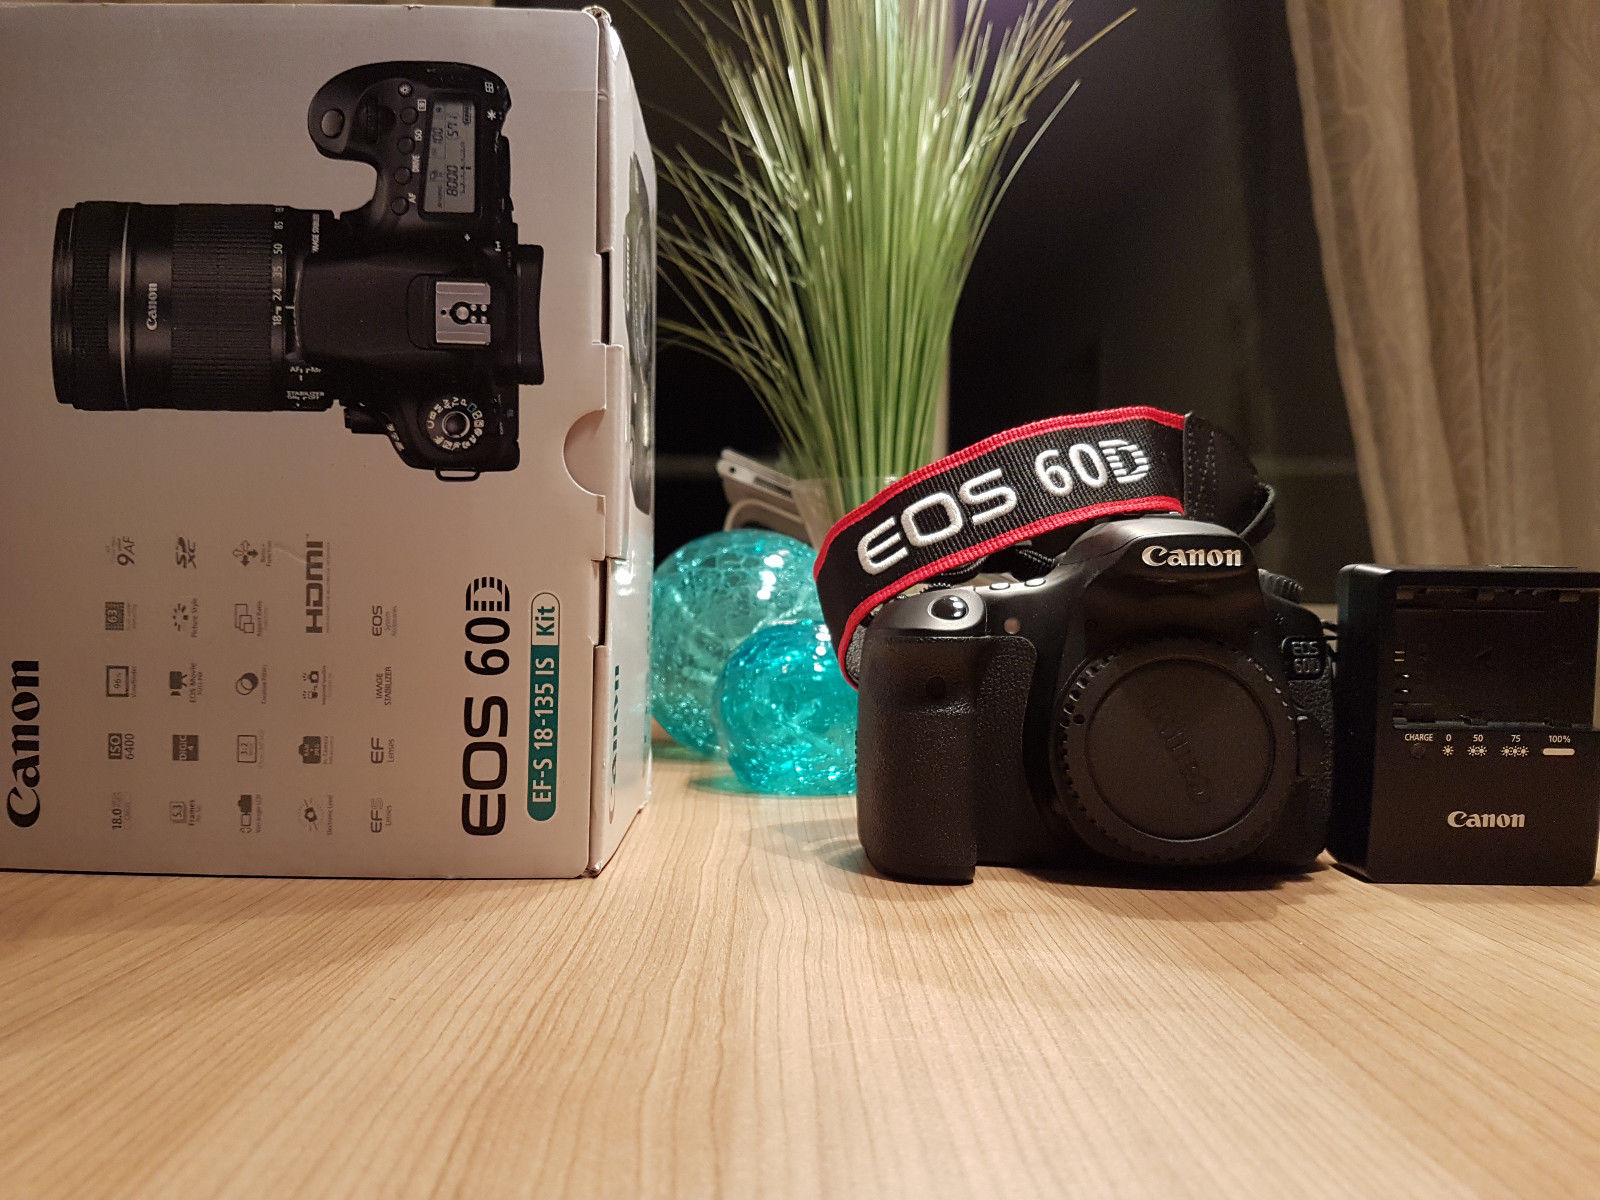 Canon EOS 60D - BODY ONLY - 18.0 MP SLR-Digitalkamera - Schwarz (Nur Gehäuse)